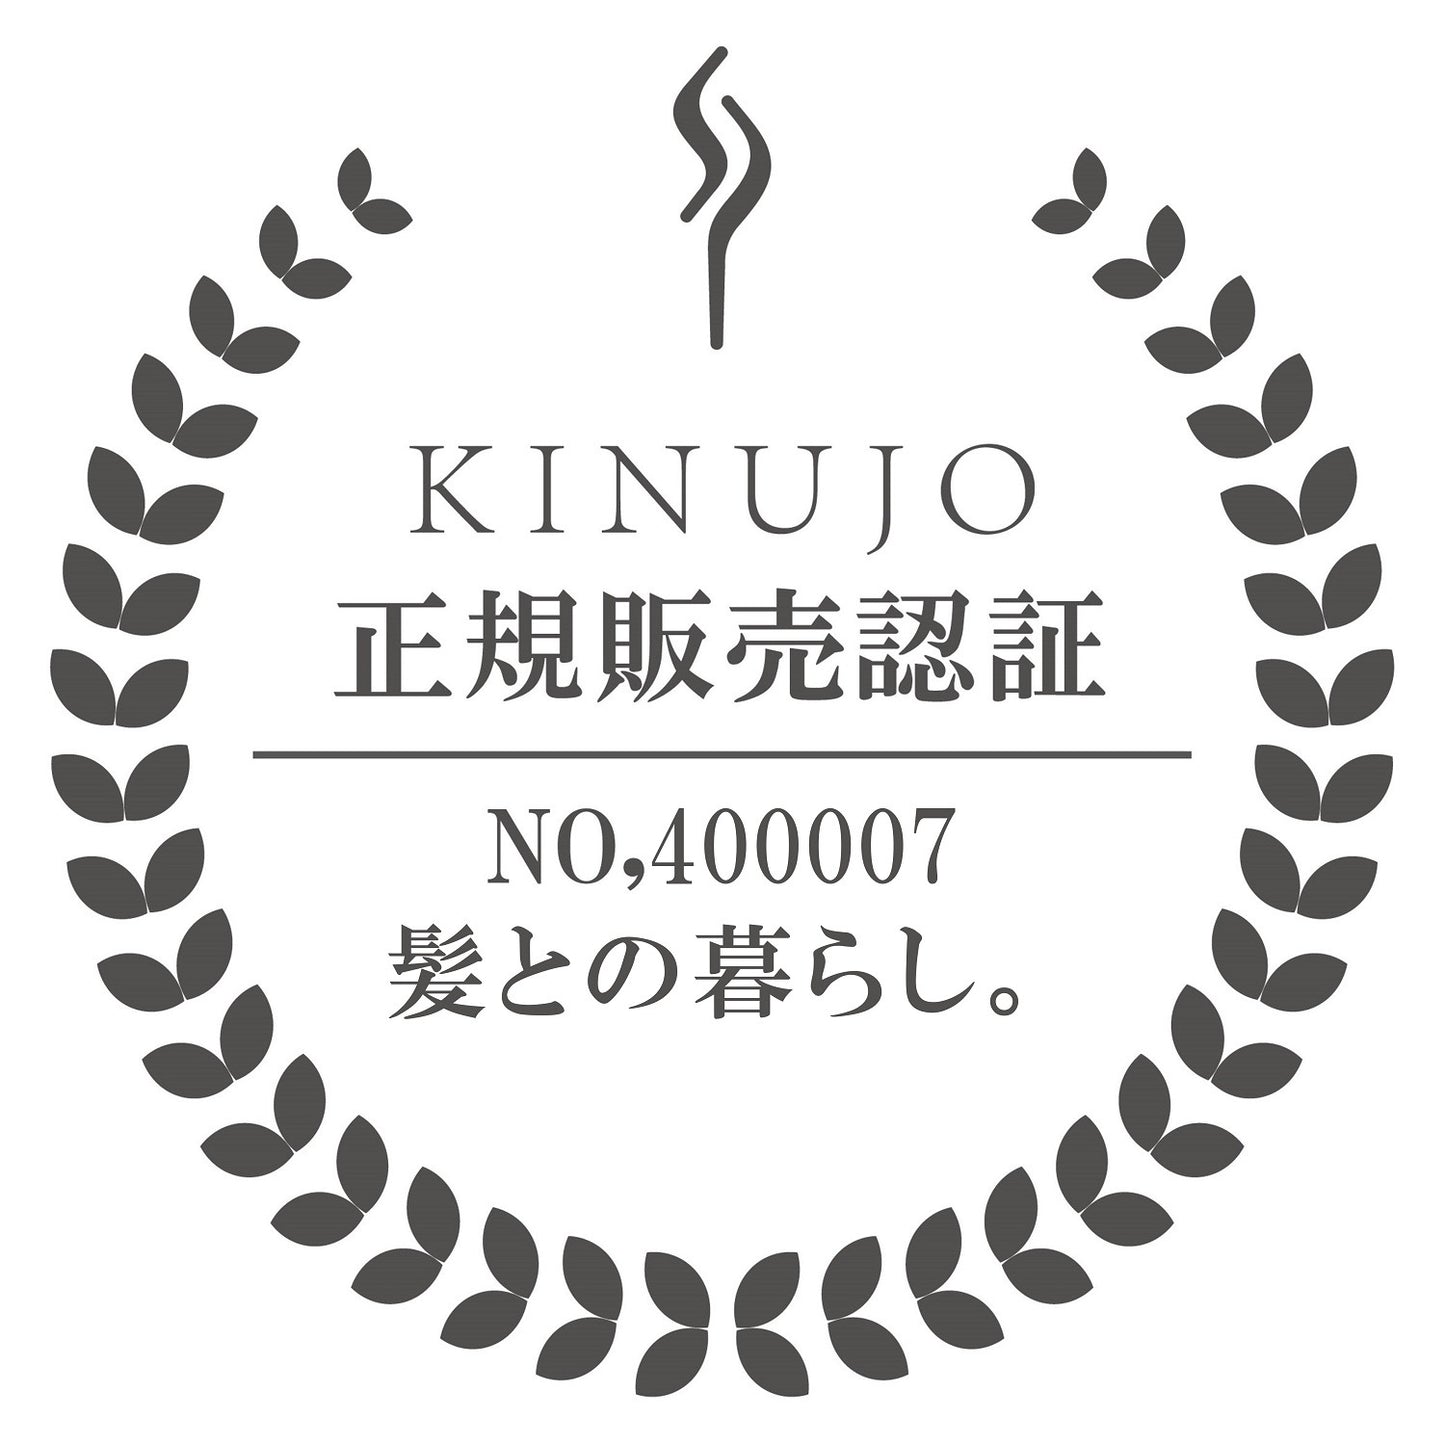 【公式】KINUJO Pro(絹女プロ)ストレートヘアアイロン【1年保証】